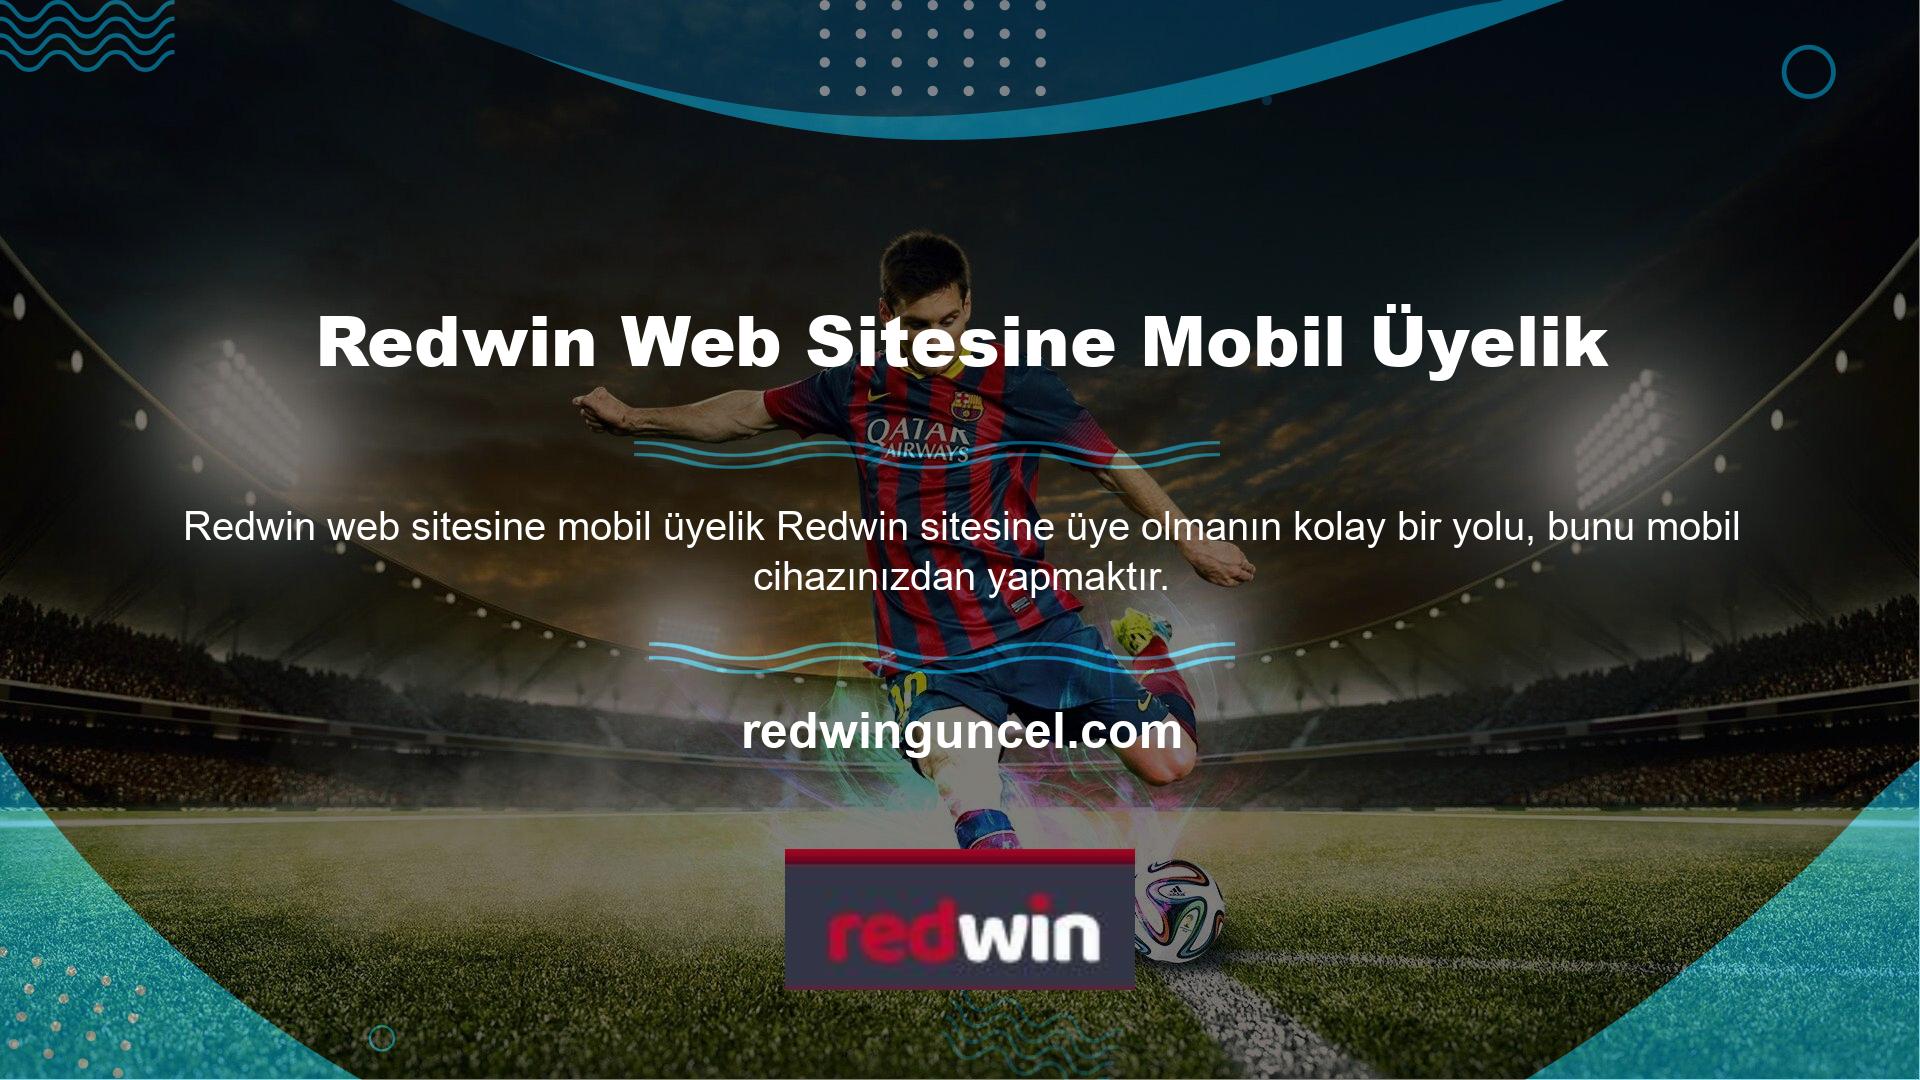 Yeni hesap oluşturma aşamasında, bahisçiler mobil cihazlarında en son güncellenen Redwin web sitesi adresine giriş yaparak kolayca hesap açabilirler